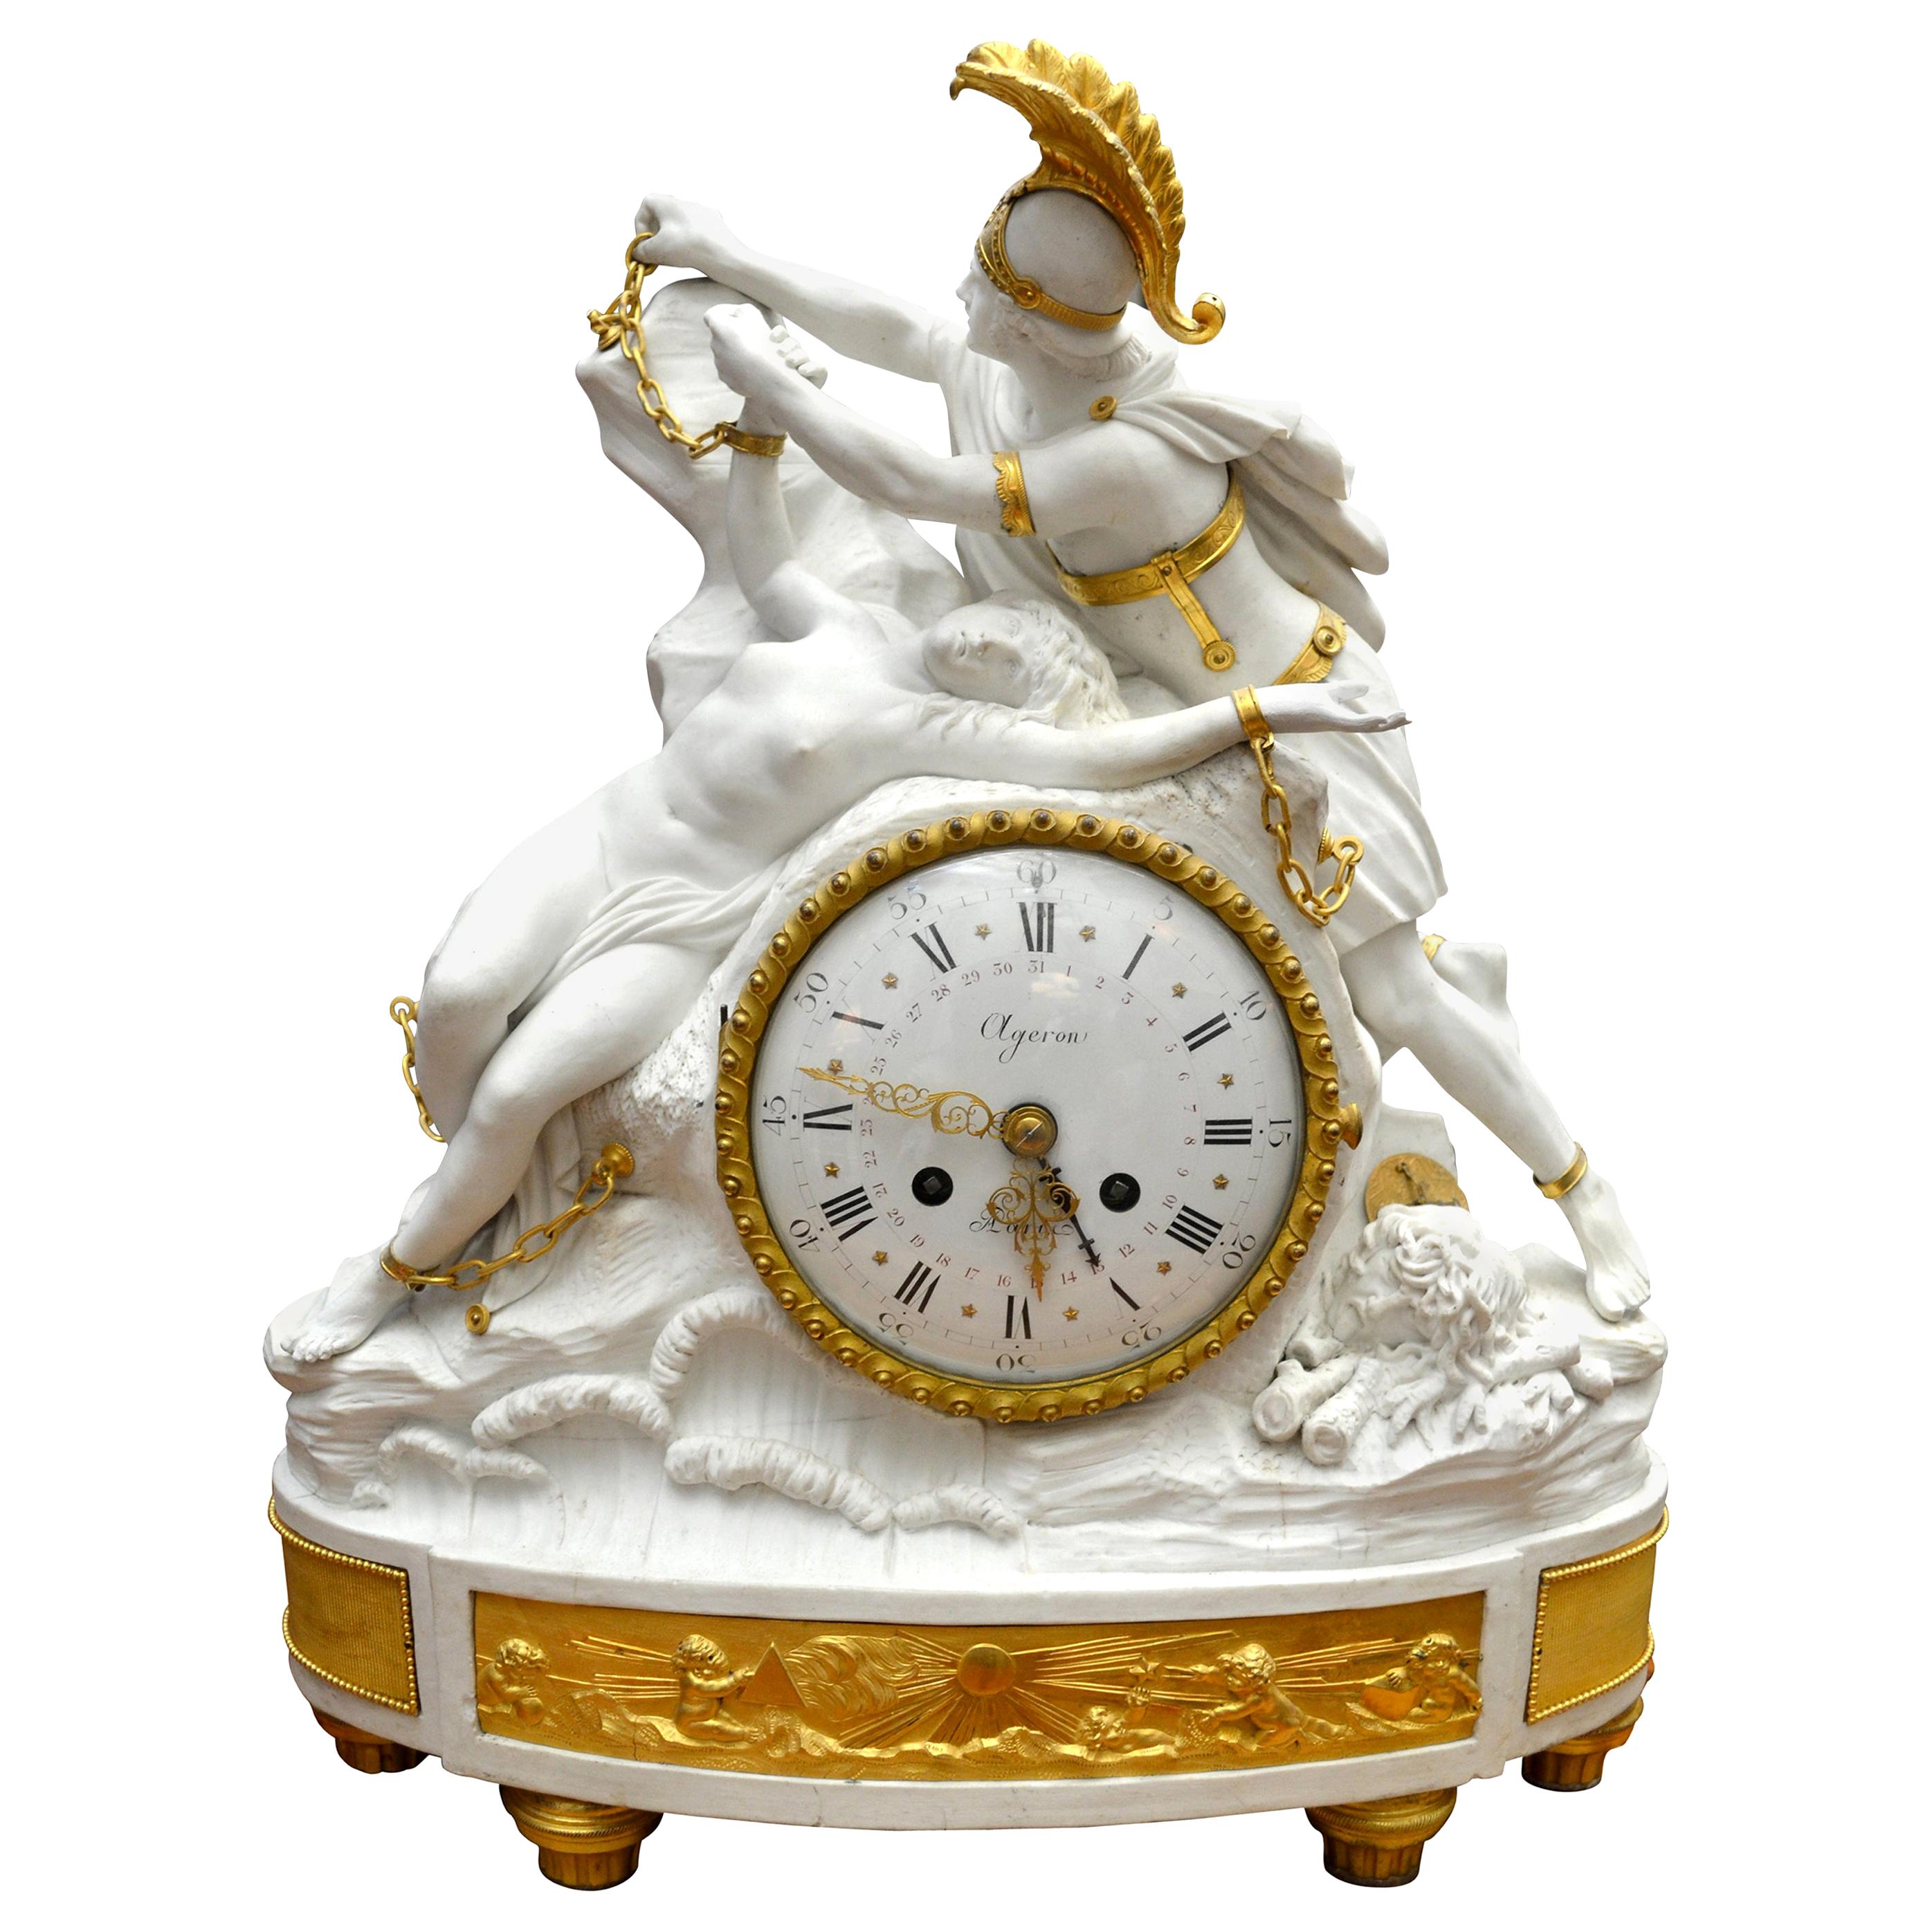 Ein feines und seltenes Bisquit-Porzellan und vergoldete Bronze Louis XV figurale Uhr f Darstellung einer berühmten Szene in der griechischen Mythologie von Perseus befreit Andromeda. Das Gehäuse der Uhr ist aus Bisquit-Porzellan (unglasiert)